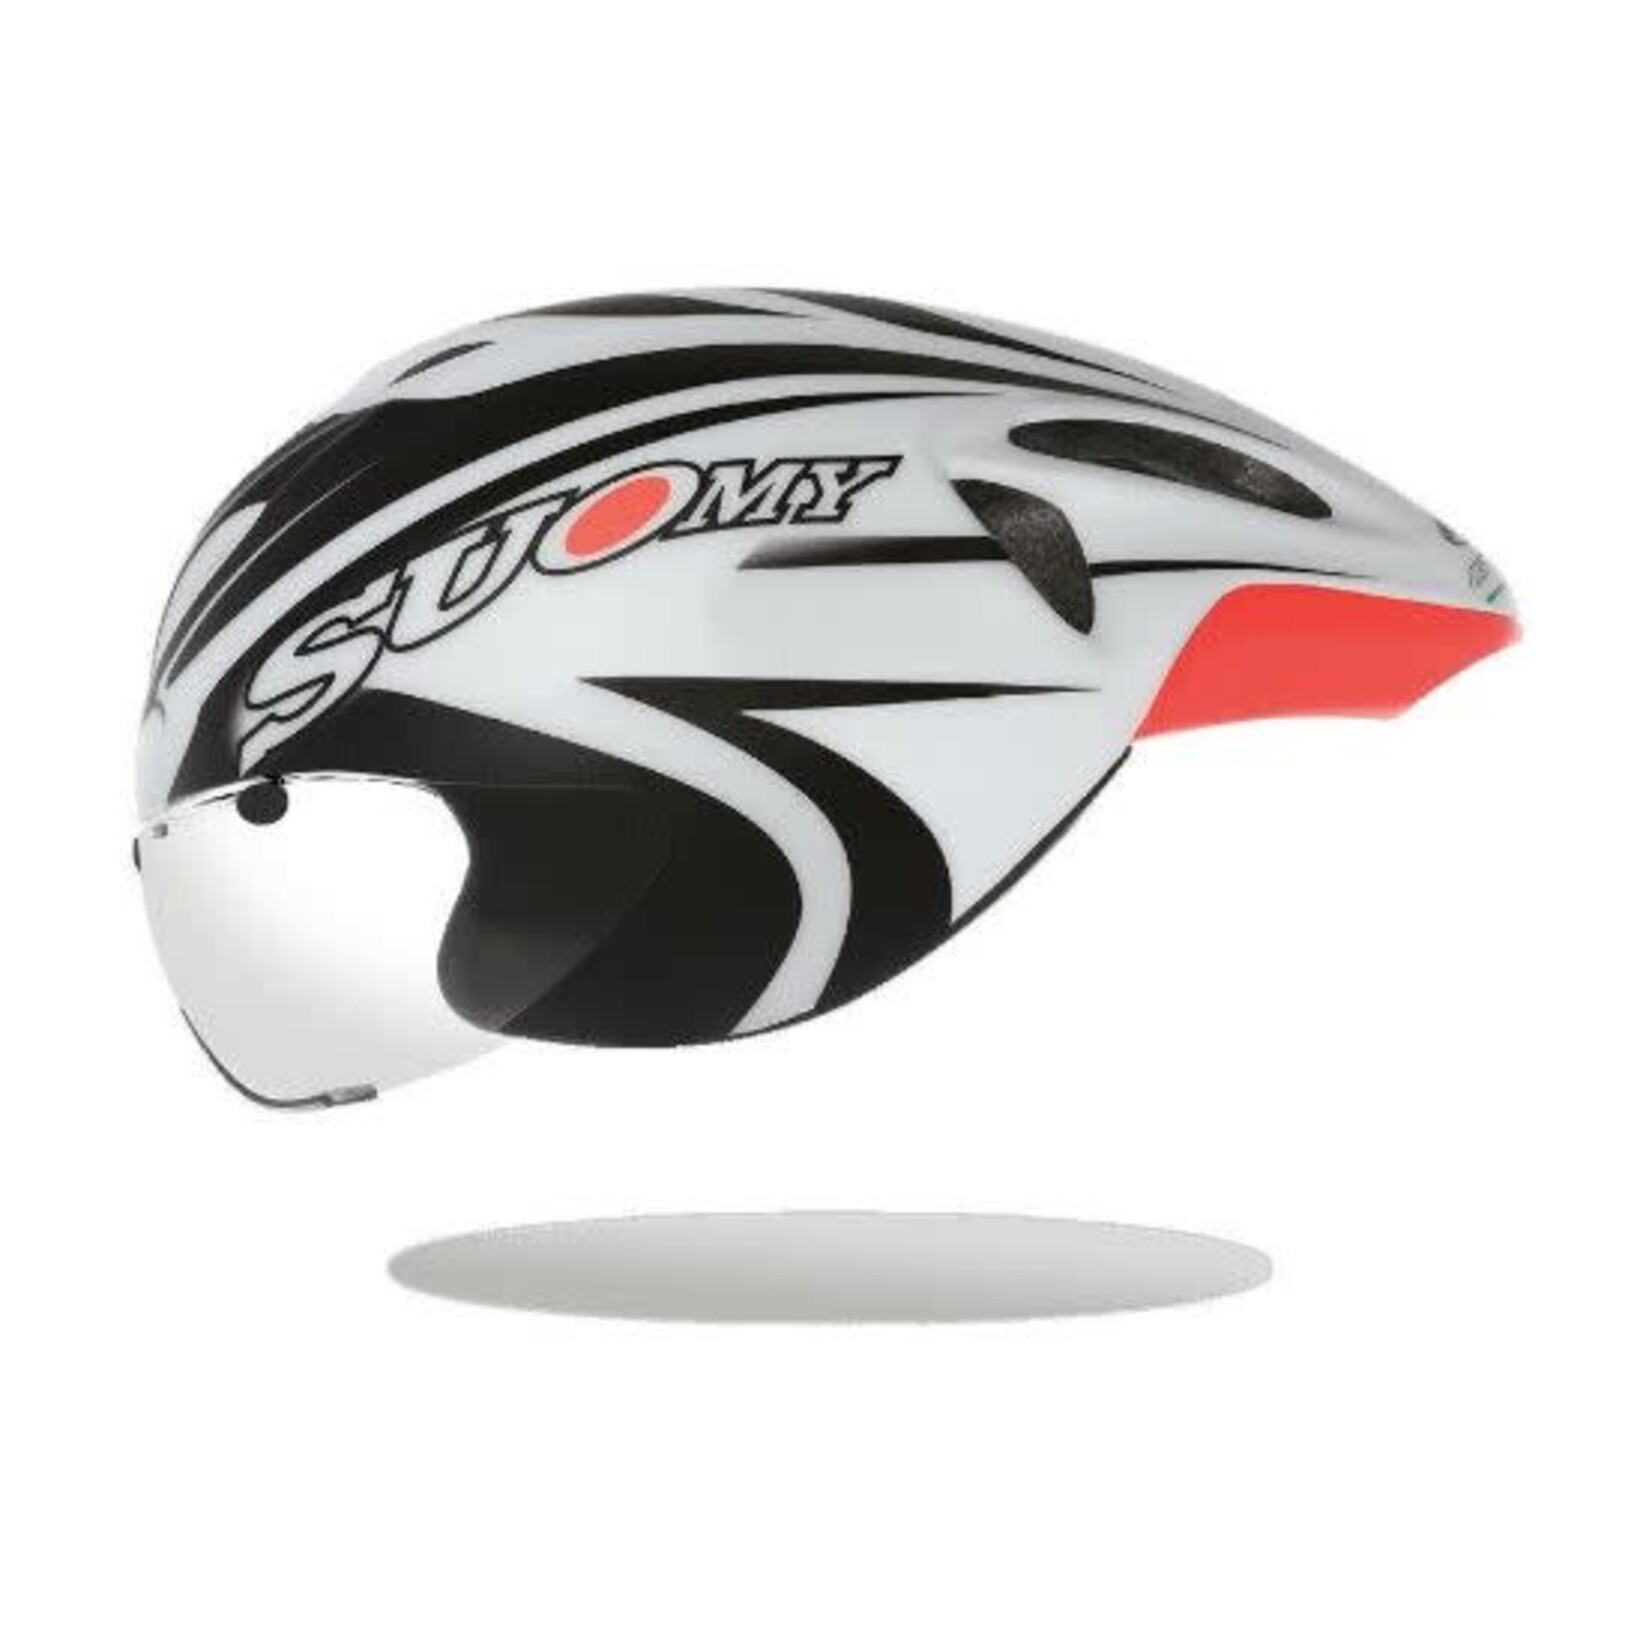 Suomy Suomy GT-R CHRONO White Black TT Helmet- Certified CE standard EN 1078